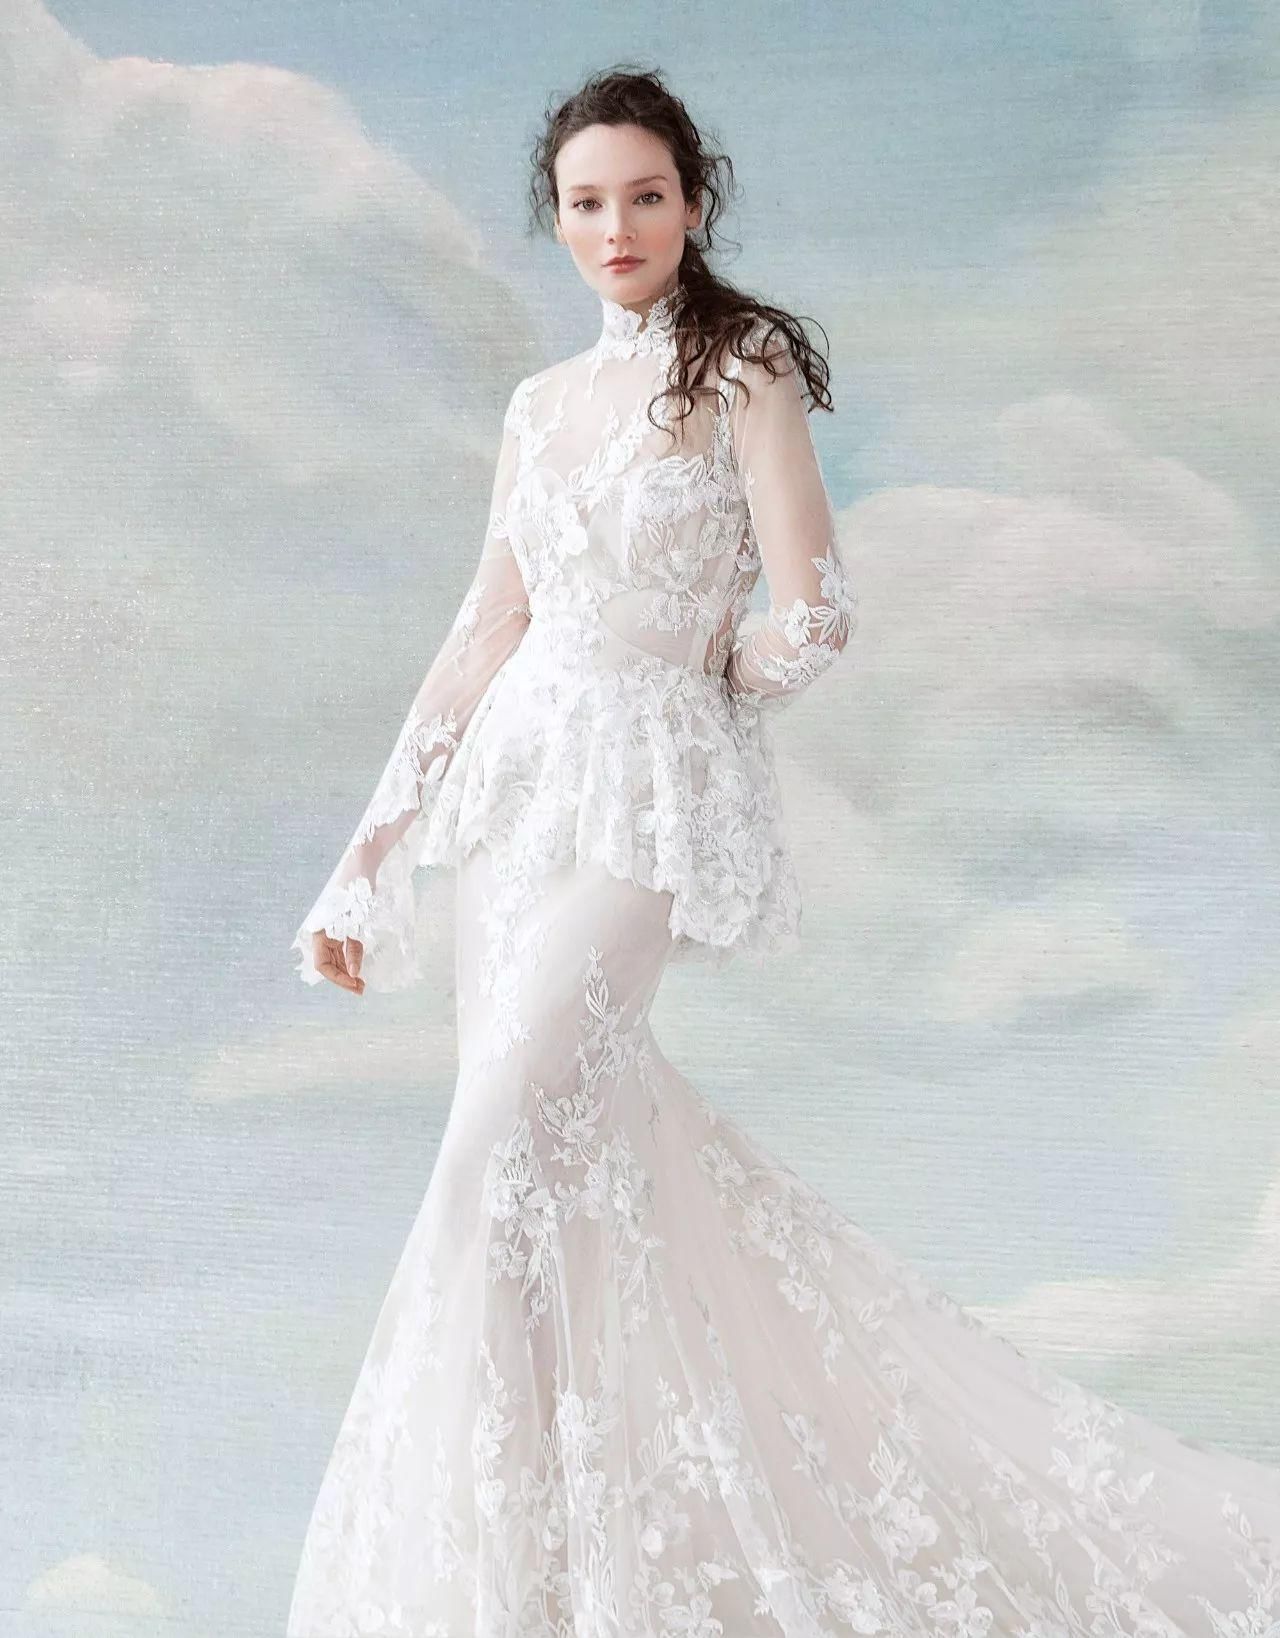 梦幻般的婚礼,你需要穿上一件梦幻般的婚纱